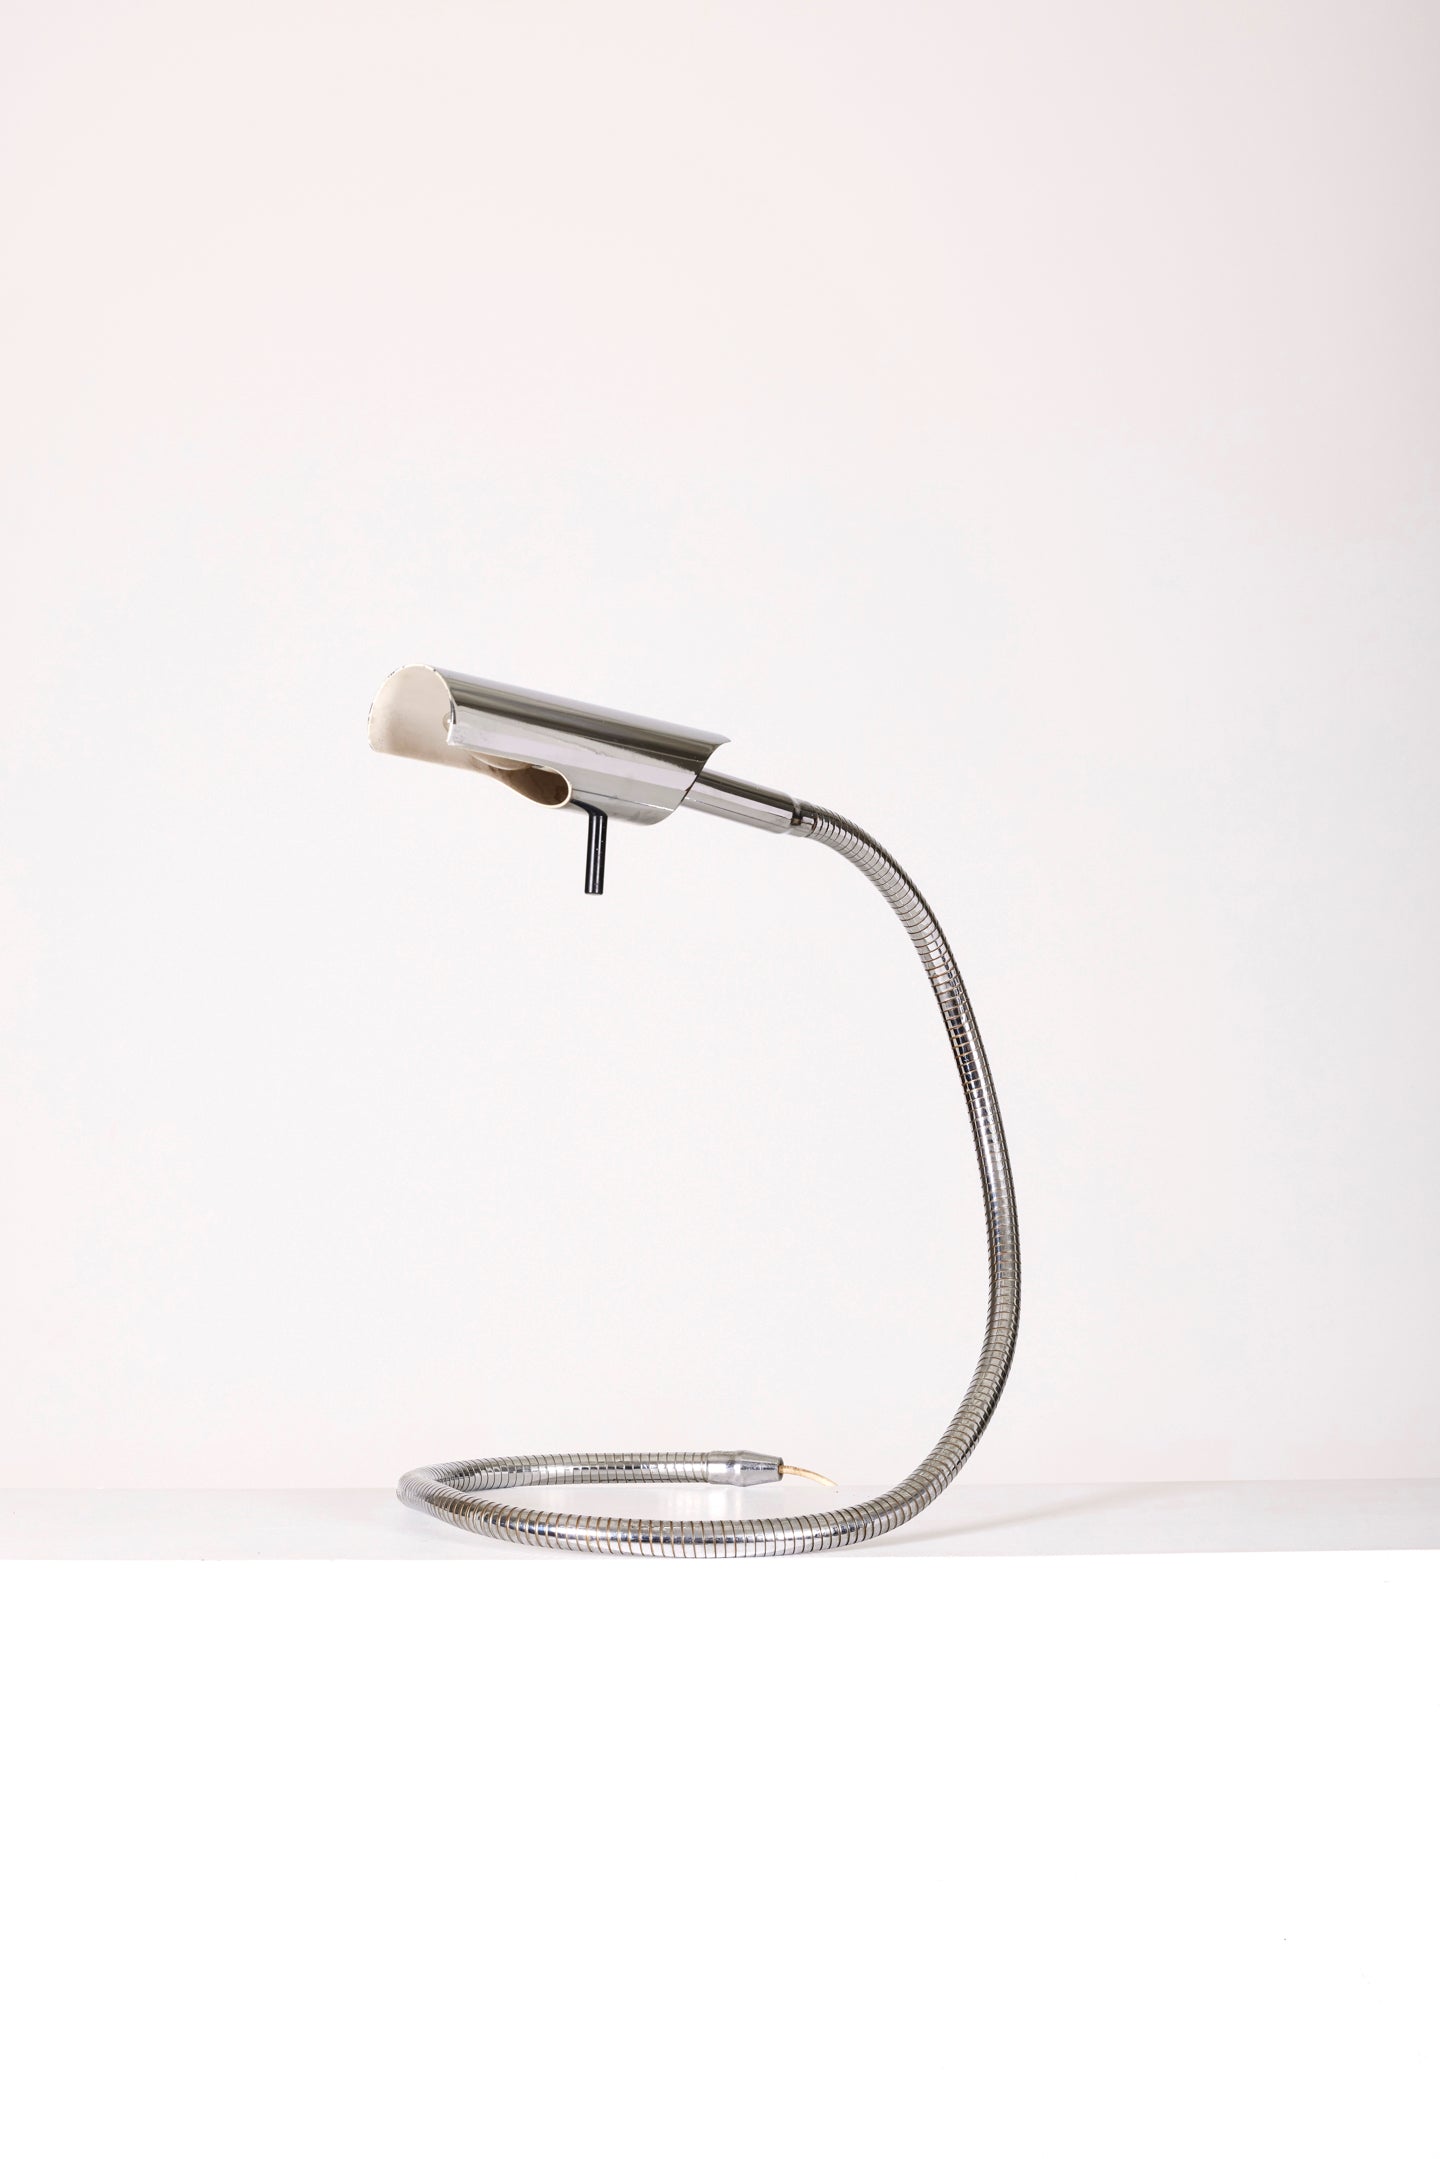 Lampe de bureau modèle F233 du designer Etienne Fermigier pour les Monix, années 1970. Lampe de table en métal chromé, légères traces d'usures à noter.